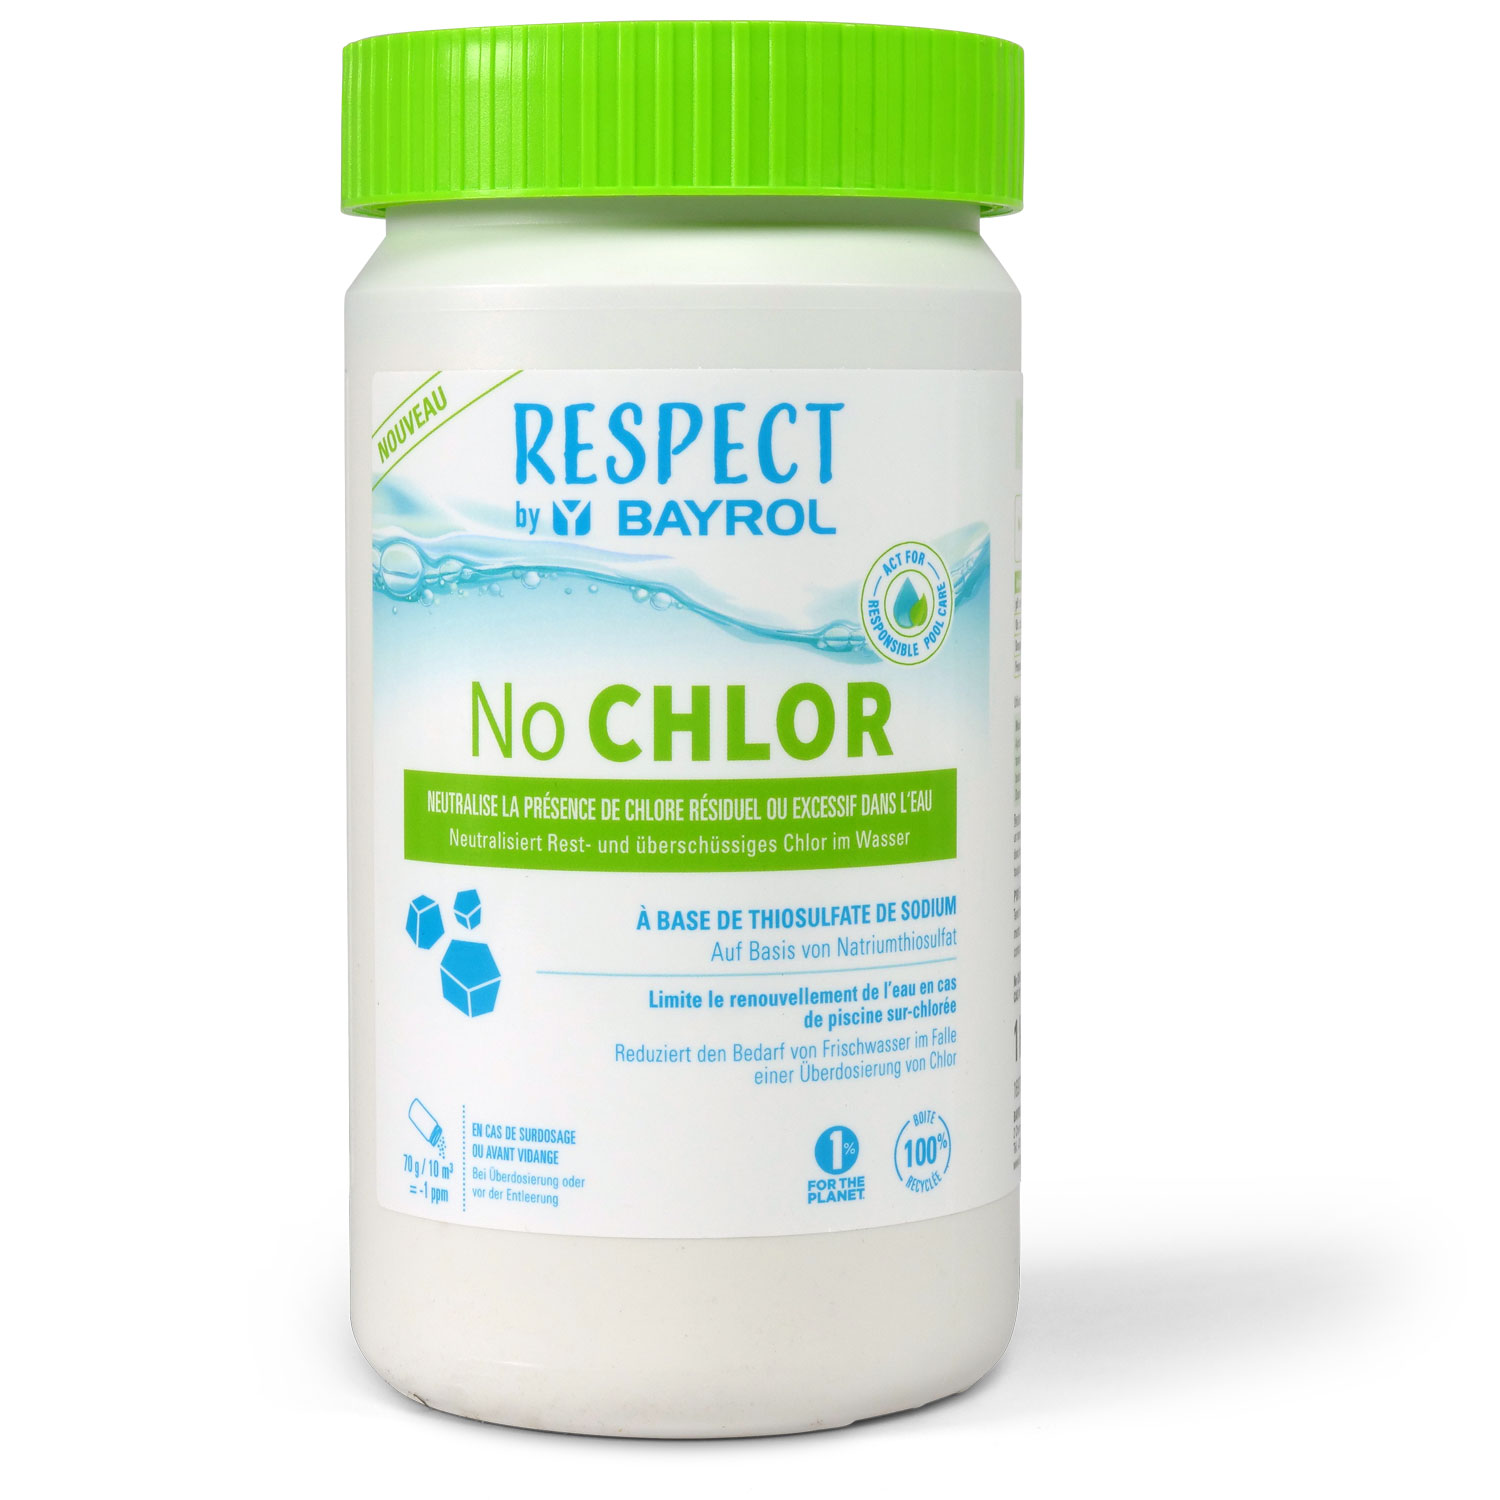 RESPECT No CHLOR - 1 kg by BAYROL